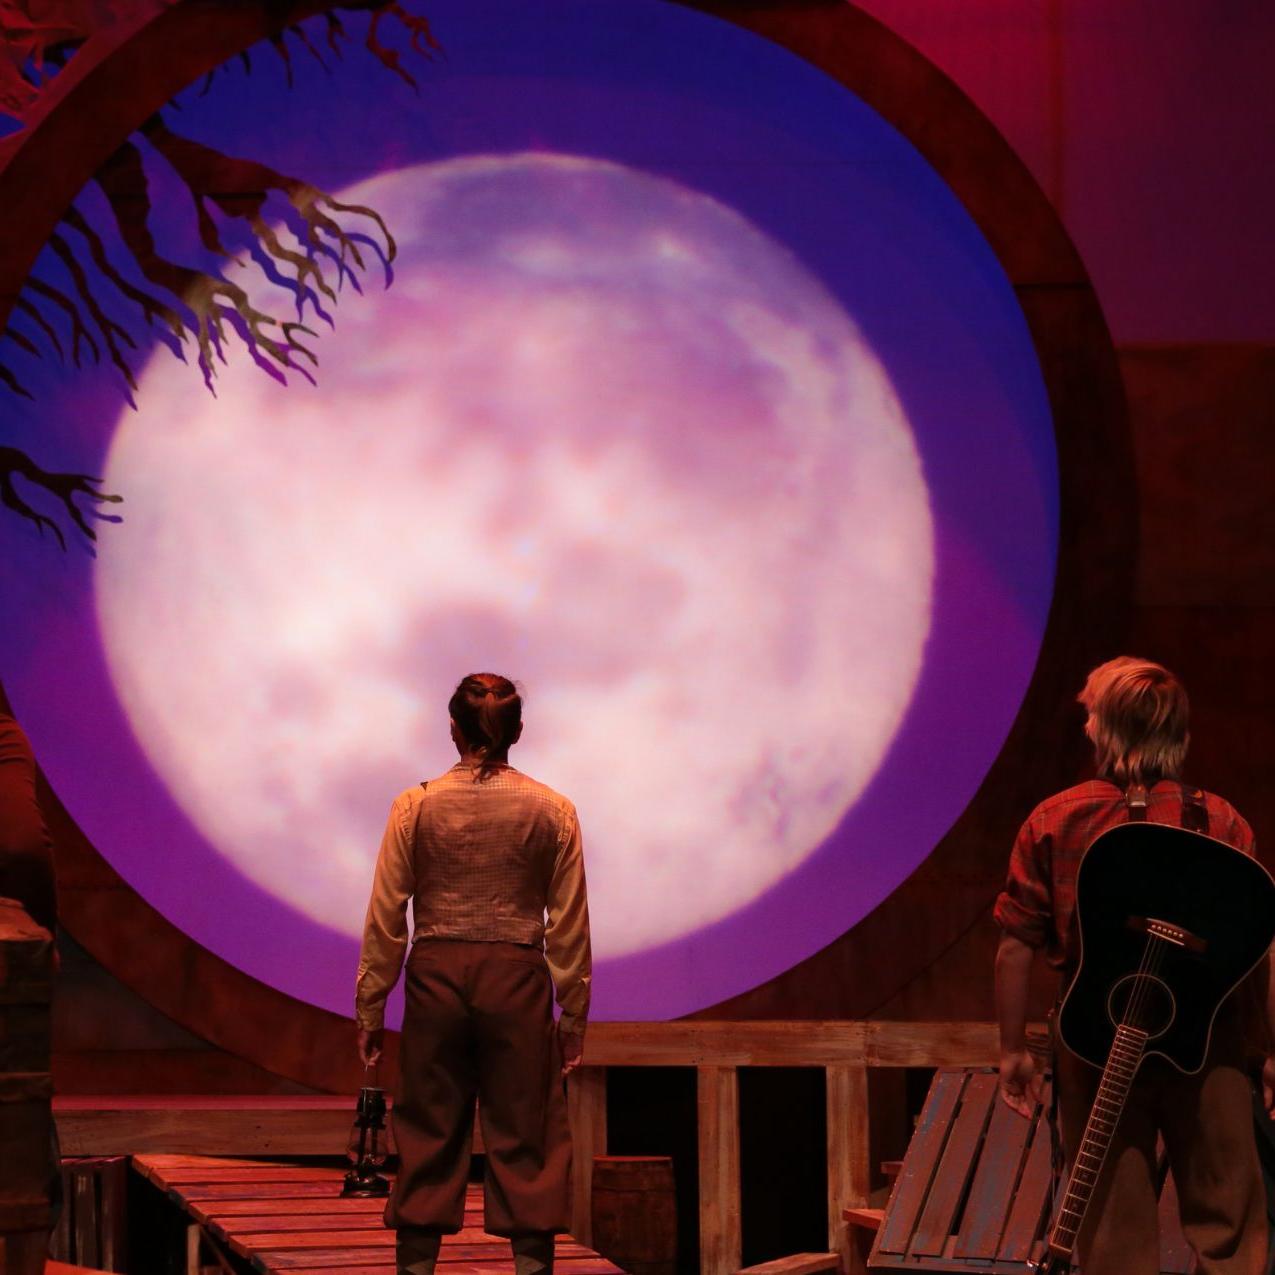 《爱德华·杜兰奇迹般的旅程》演出的舞台:背景被一个巨大的, 玫瑰色的月亮. 两个人面向月亮，朝月亮走去.